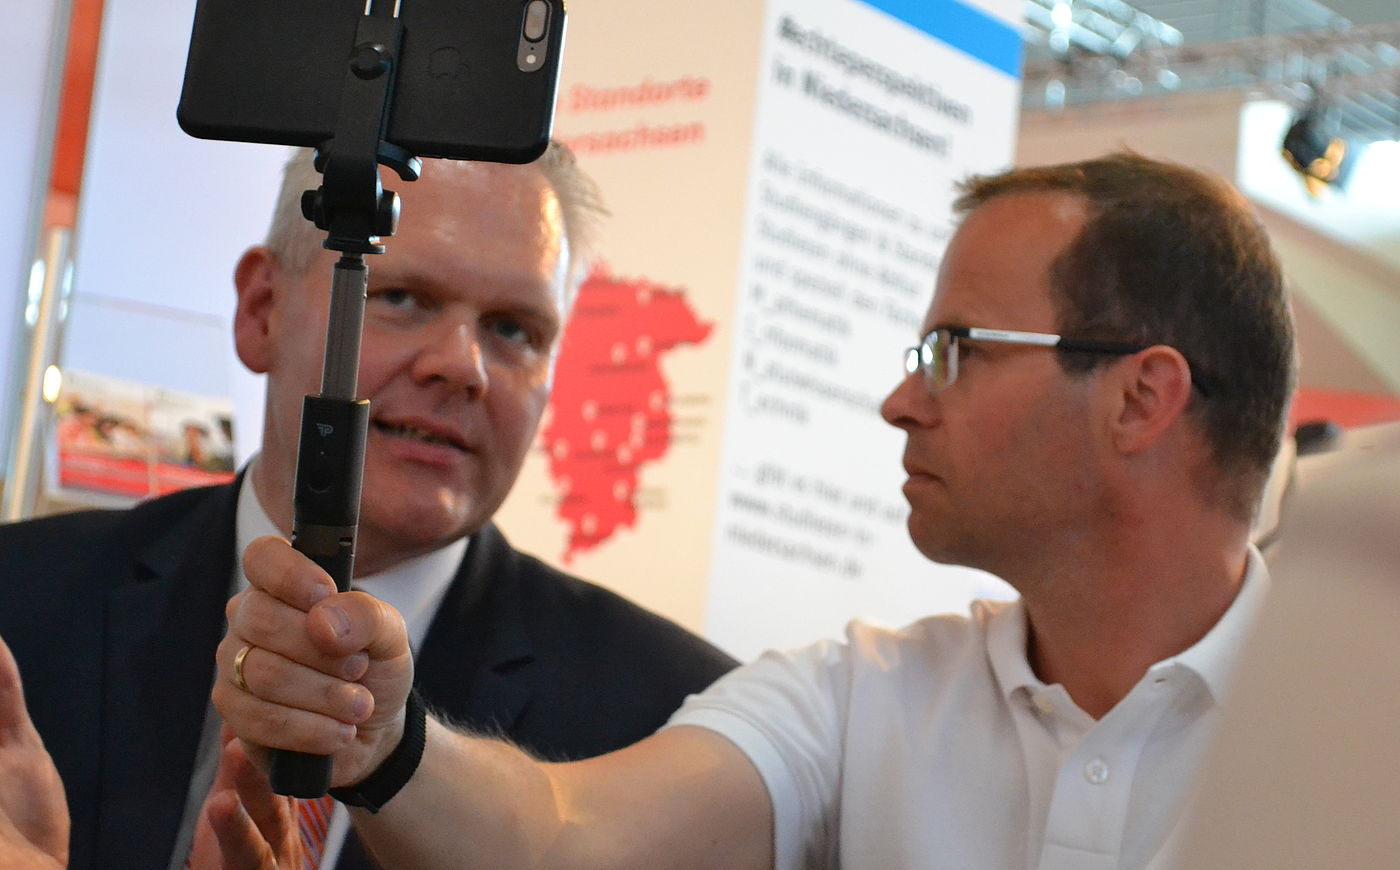 Wissenschaftsminister Björn Thümler im Gespräch mit einem Journalisten bei der Messe IdeenExpo 